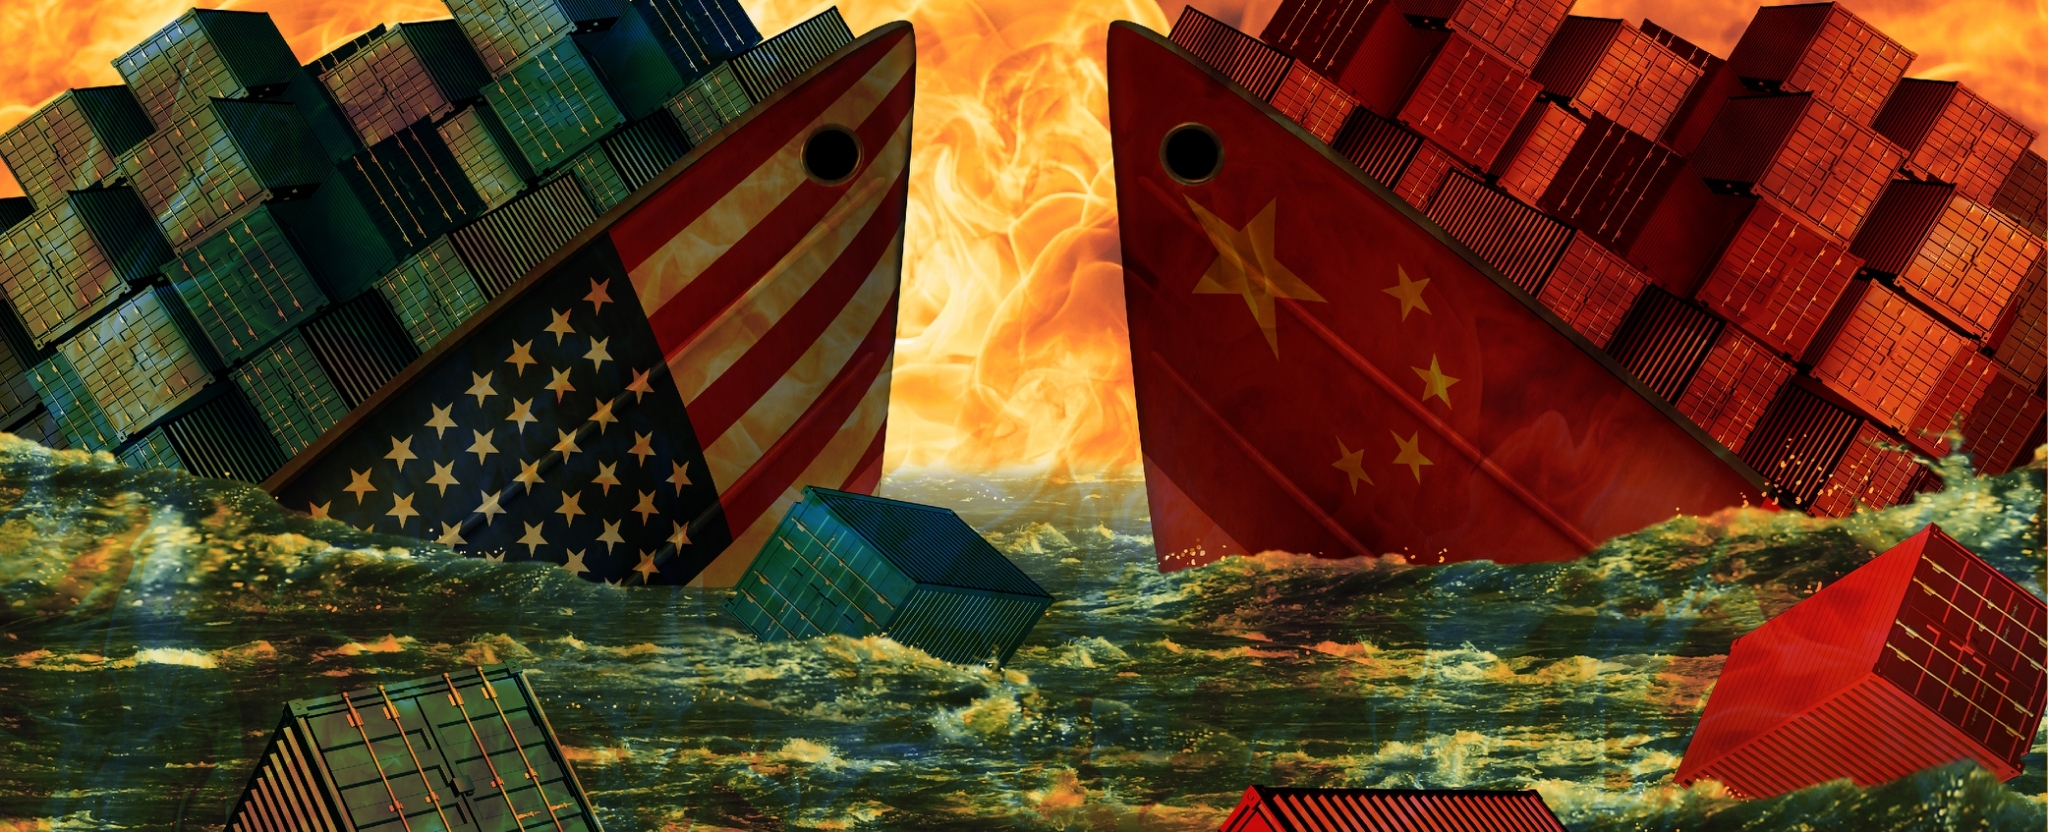 สหรัฐฯ และจีนลงนามข้อตกลงการค้าเฟสแรก